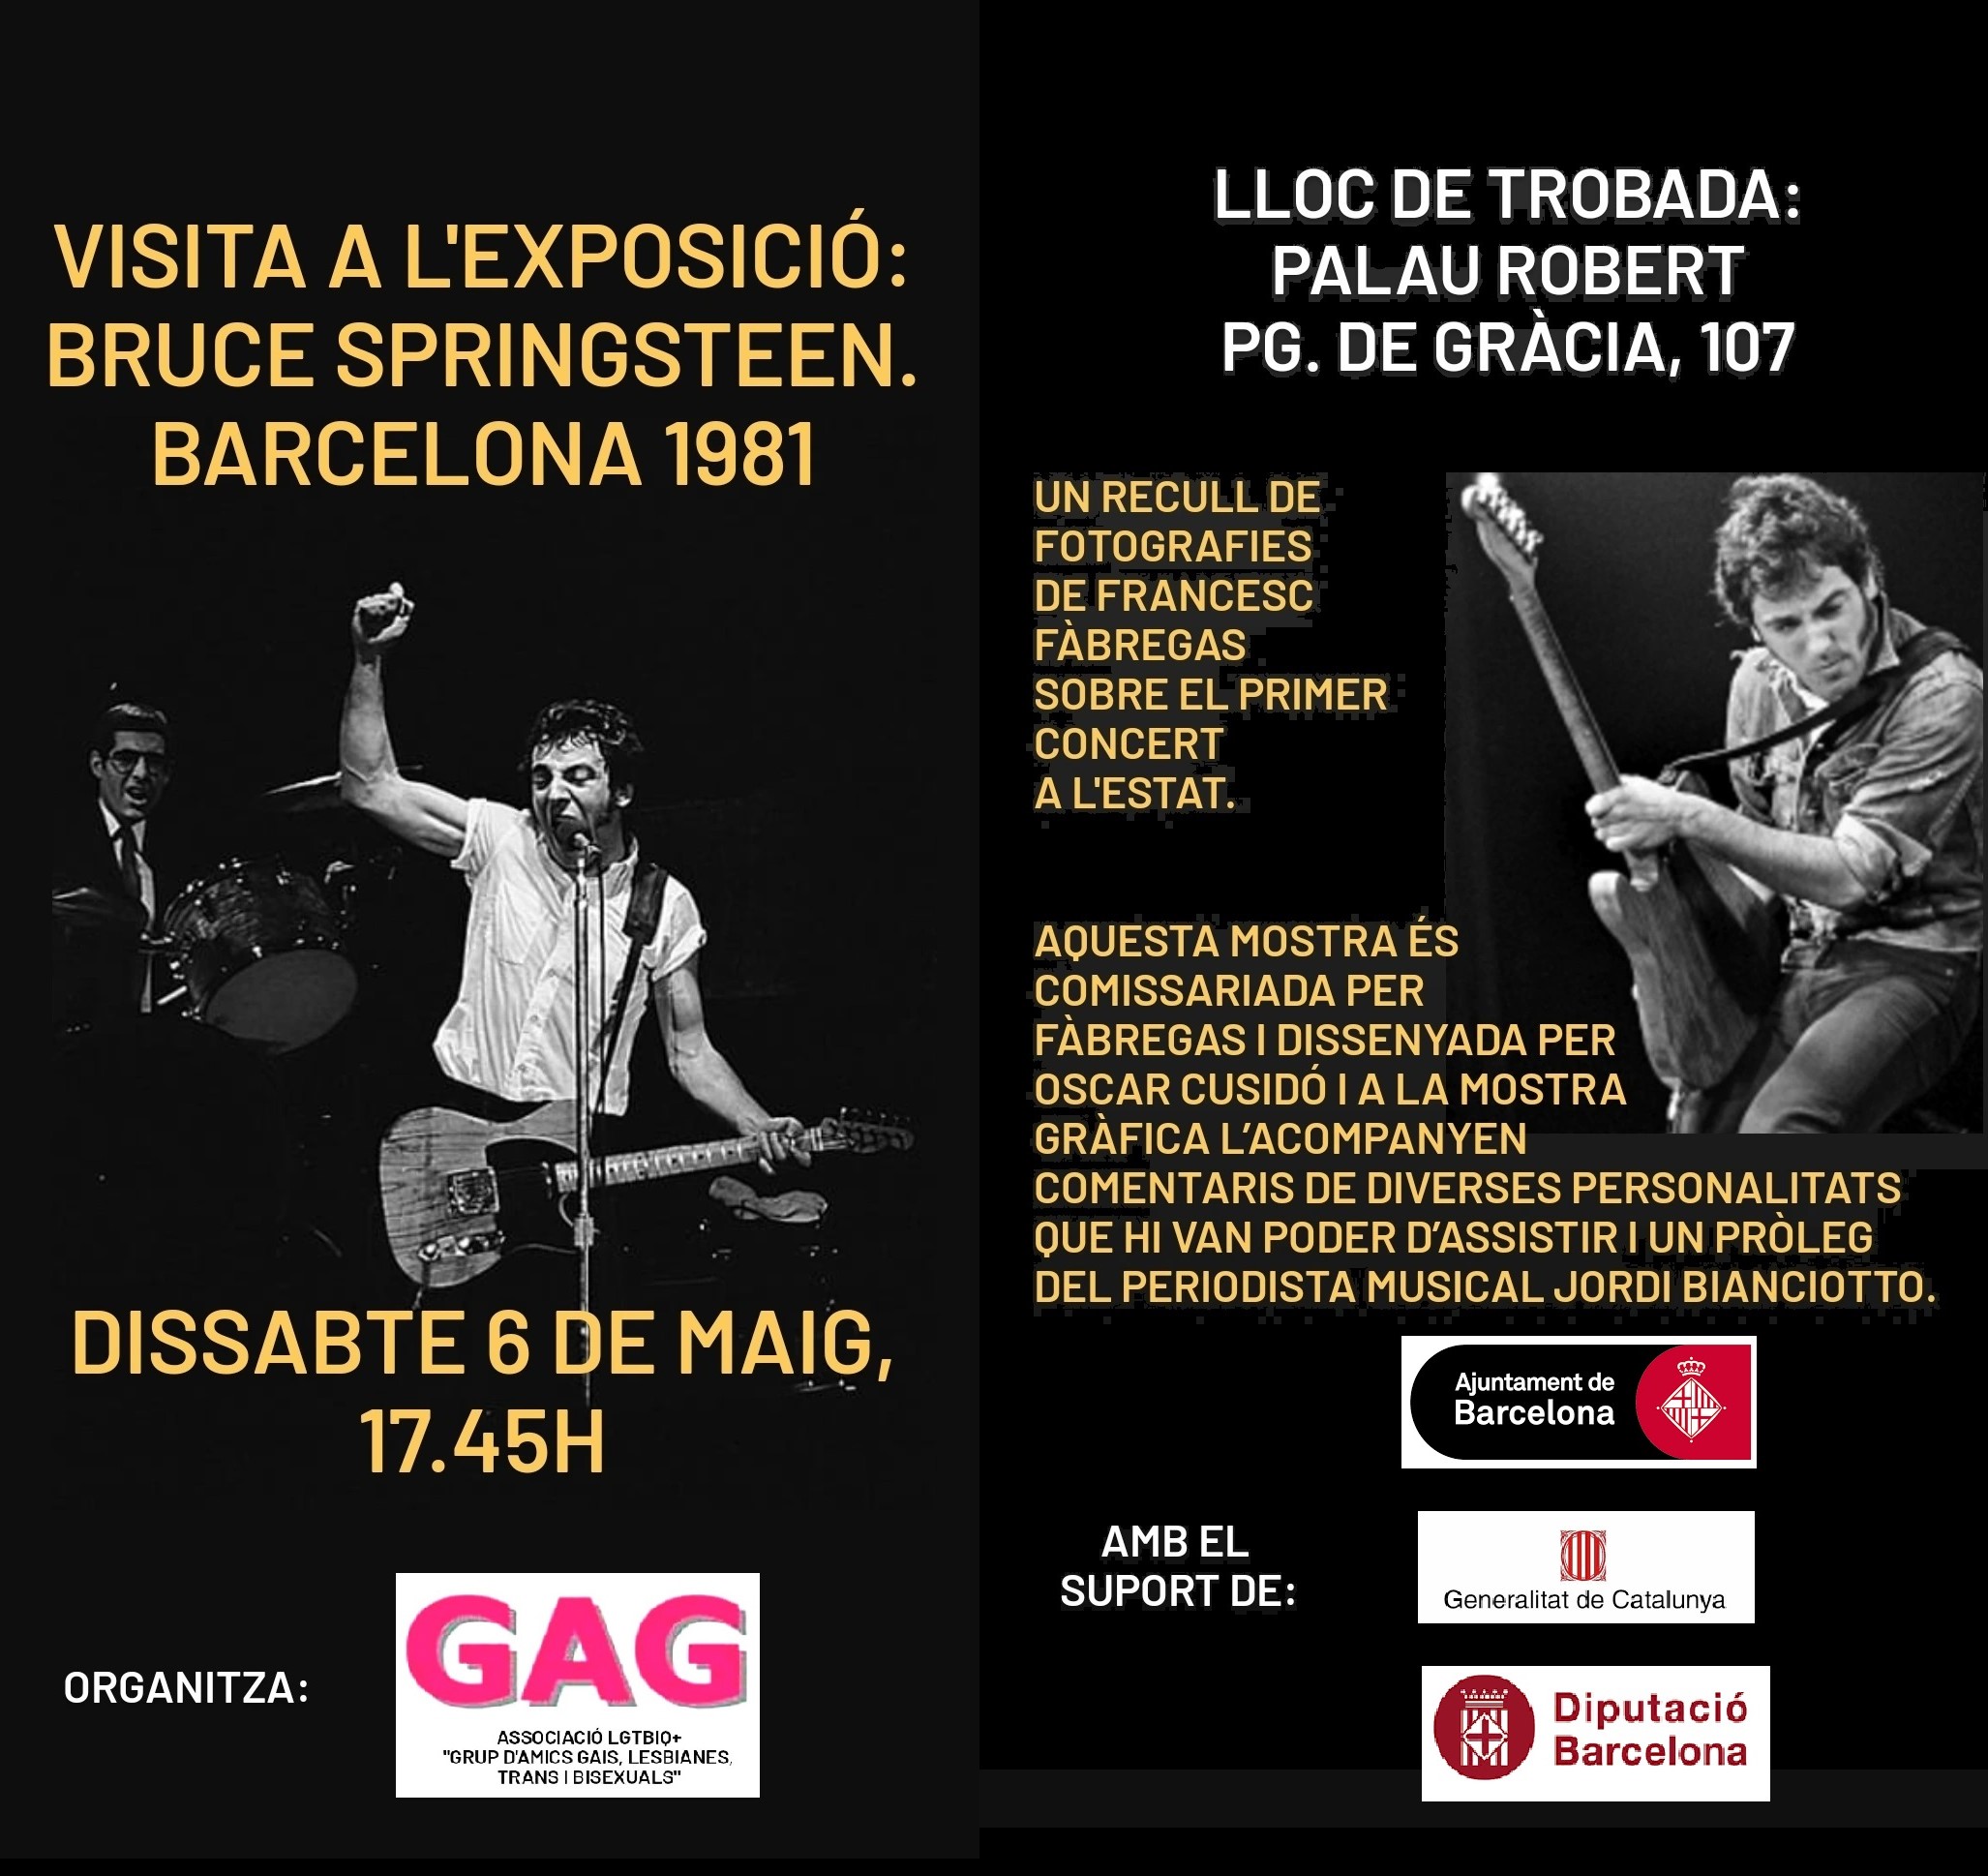 Dissabte, 6 de maig a les 17:45 – Visita a l’Exposició “Bruce Springsteen. Barcelona, 1981”